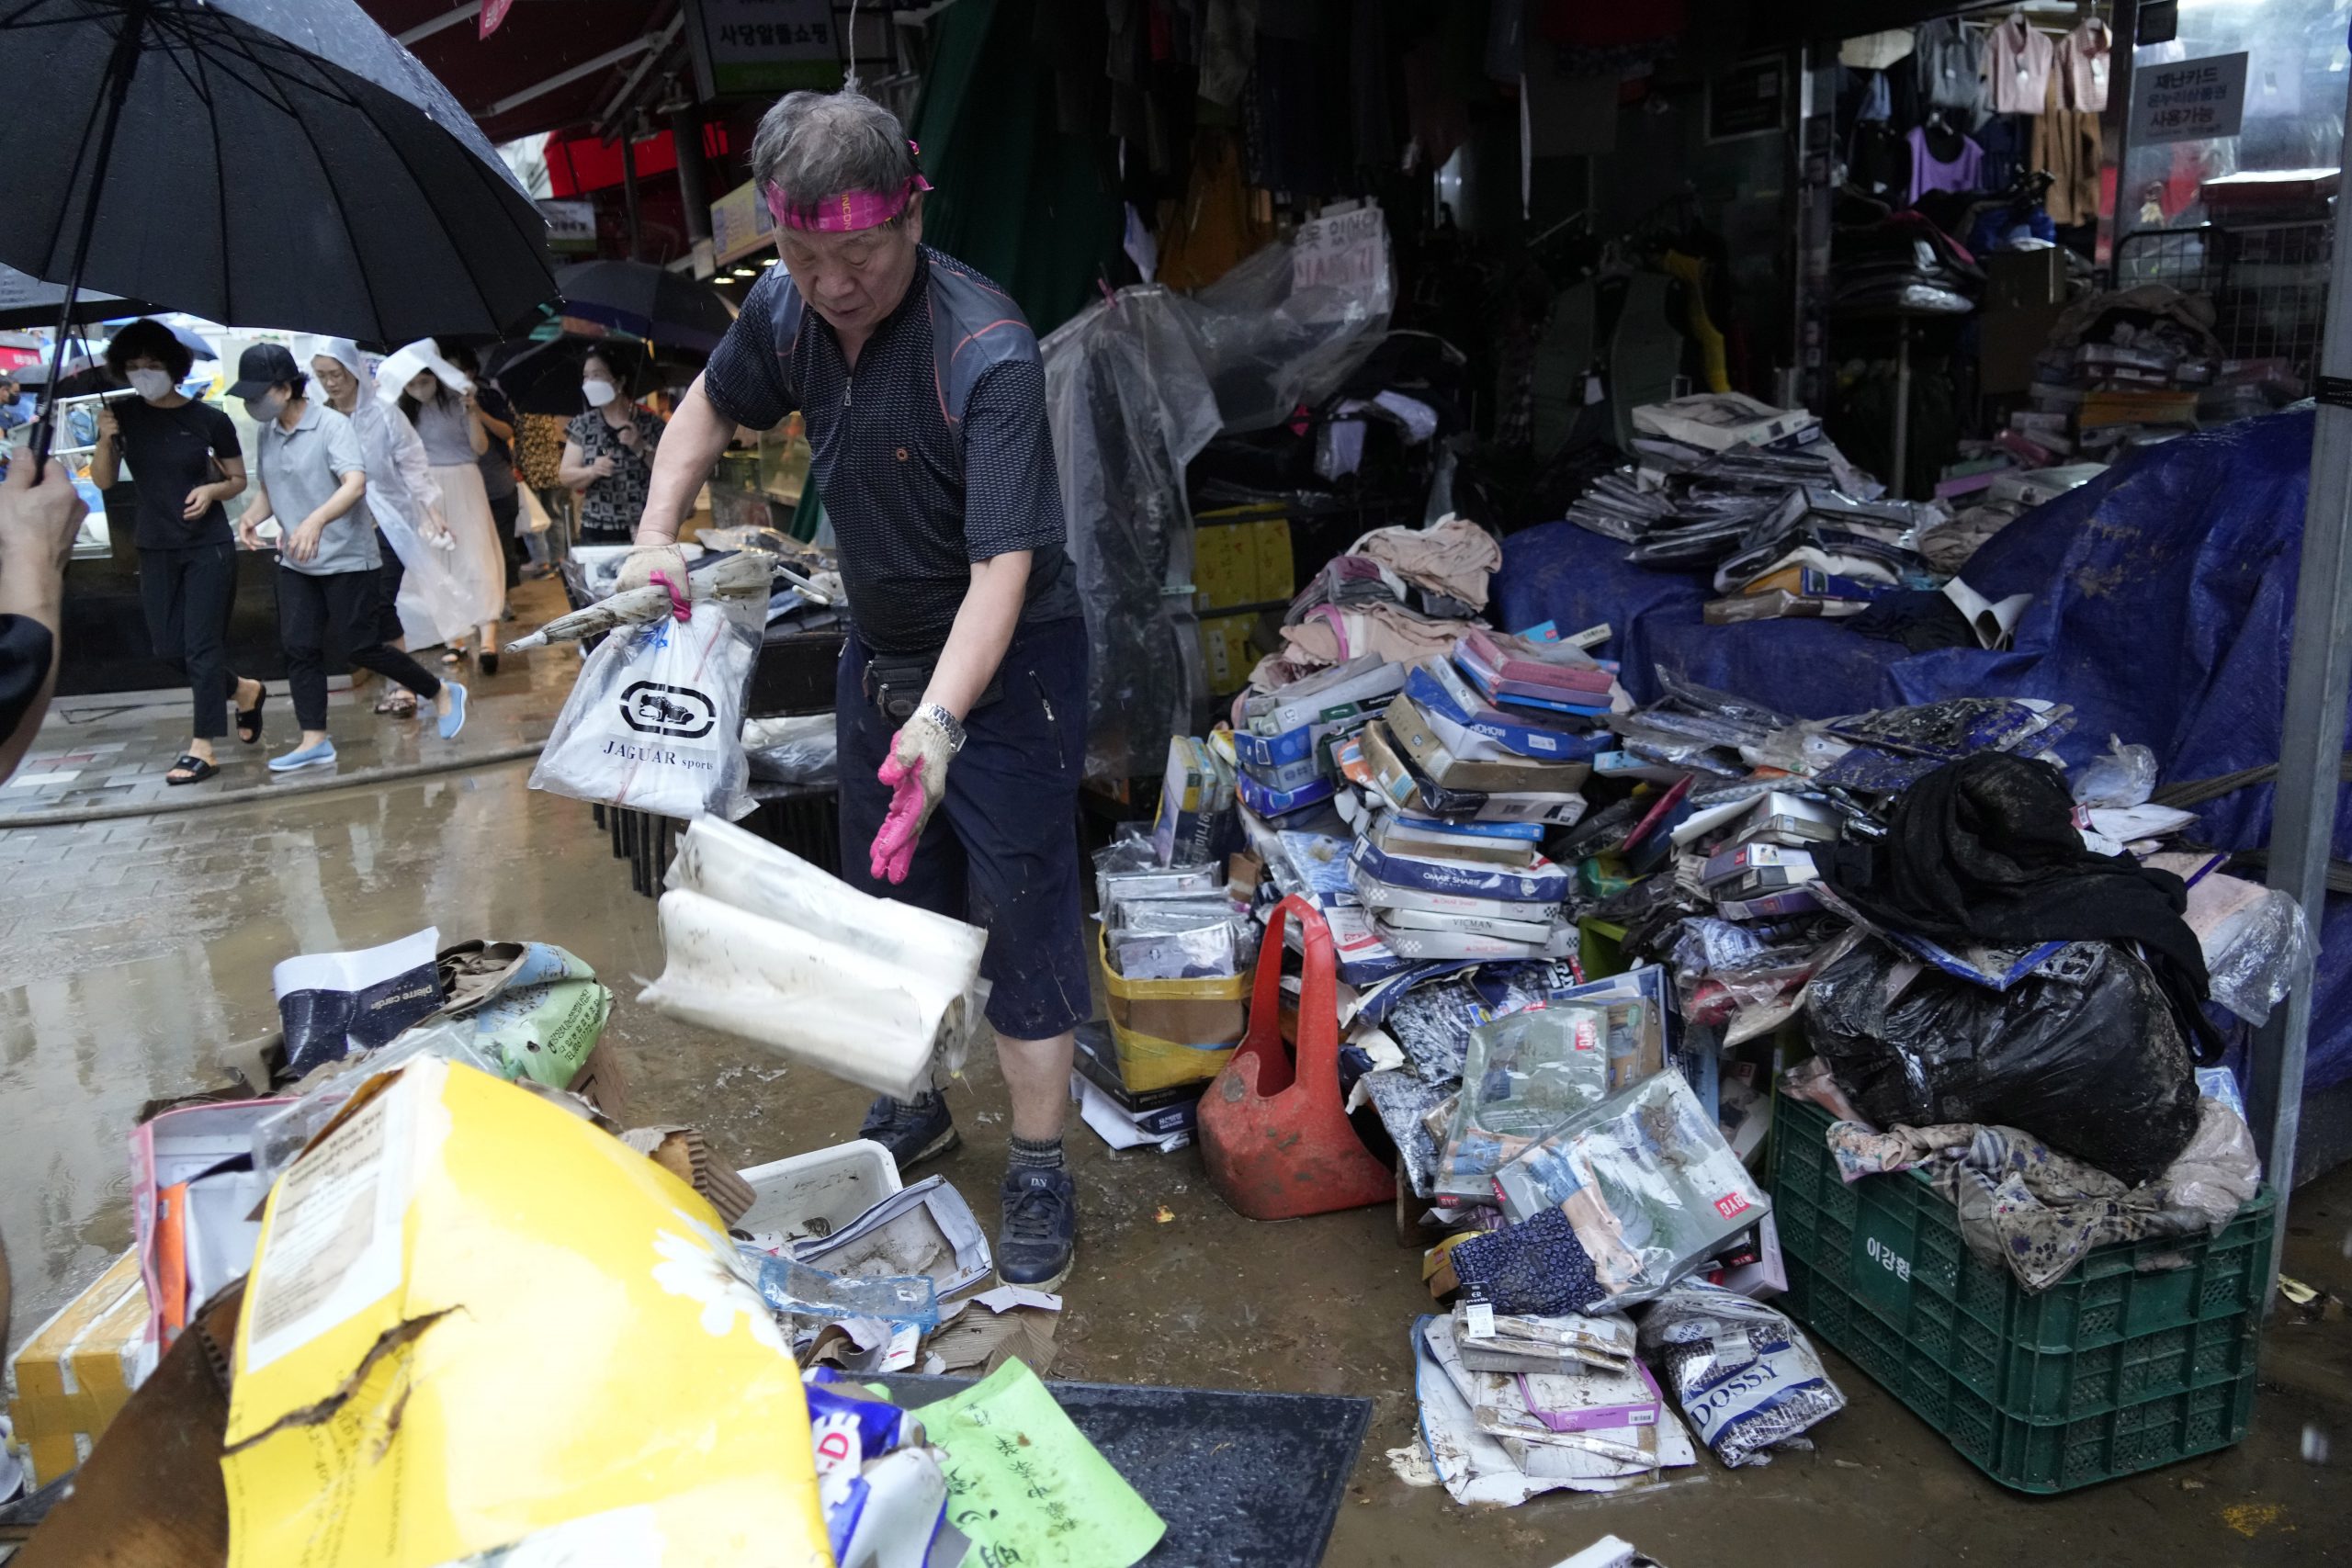 首尔洪水8死6失踪9伤 气象局:预计会有更多降雨